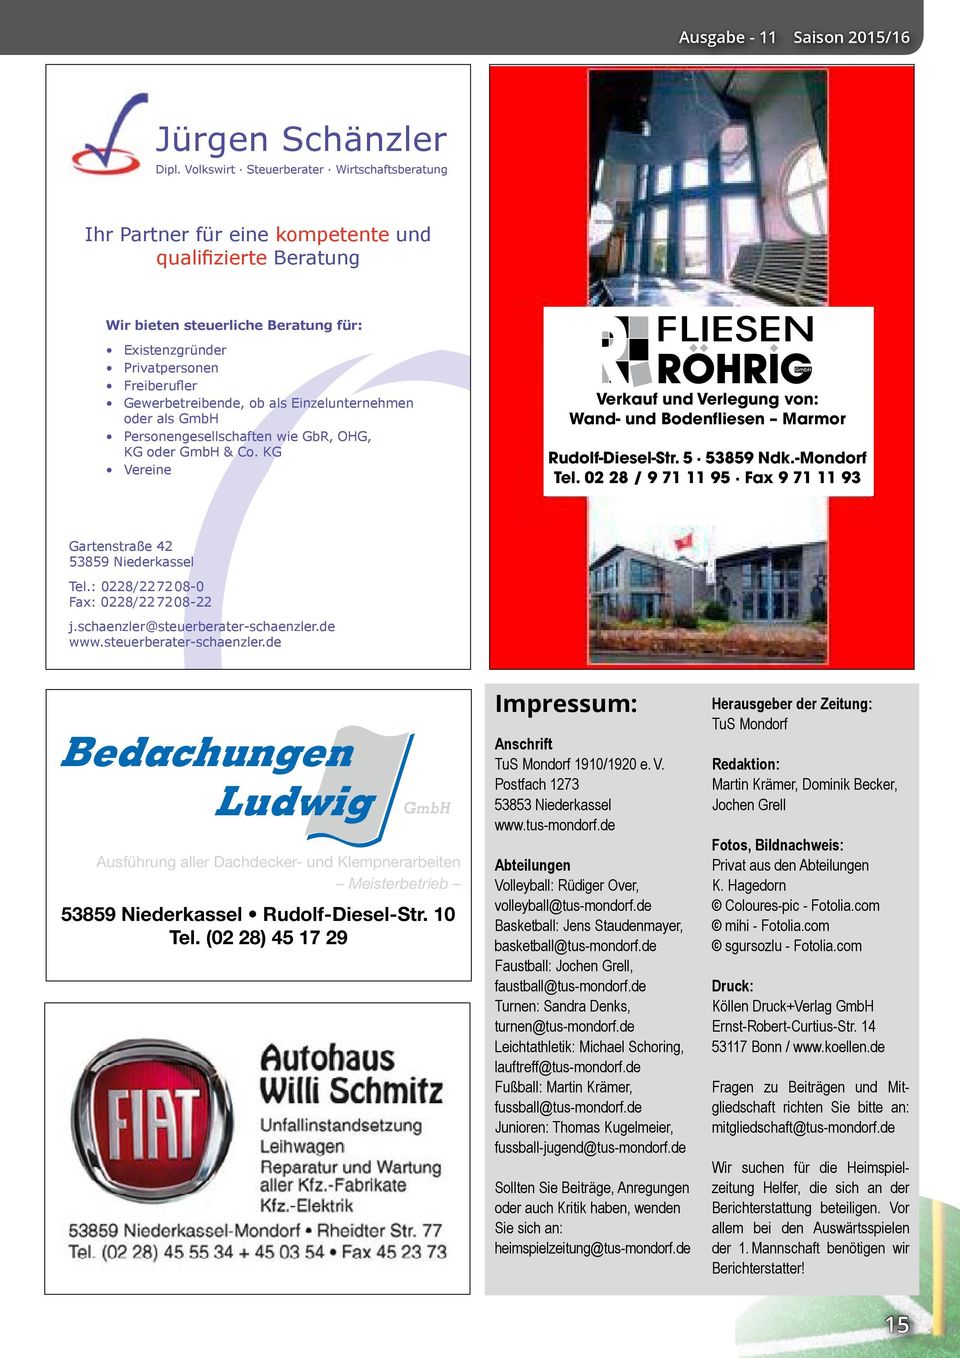 Gewerbetreibende, ob als Einzelunternehmen oder als GmbH Personengesellschaften wie GbR, OHG, KG oder GmbH & Co. KG Vereine Verkauf und Verlegung von: Wand- und Bodenfliesen Marmor Rudolf-Diesel-Str.